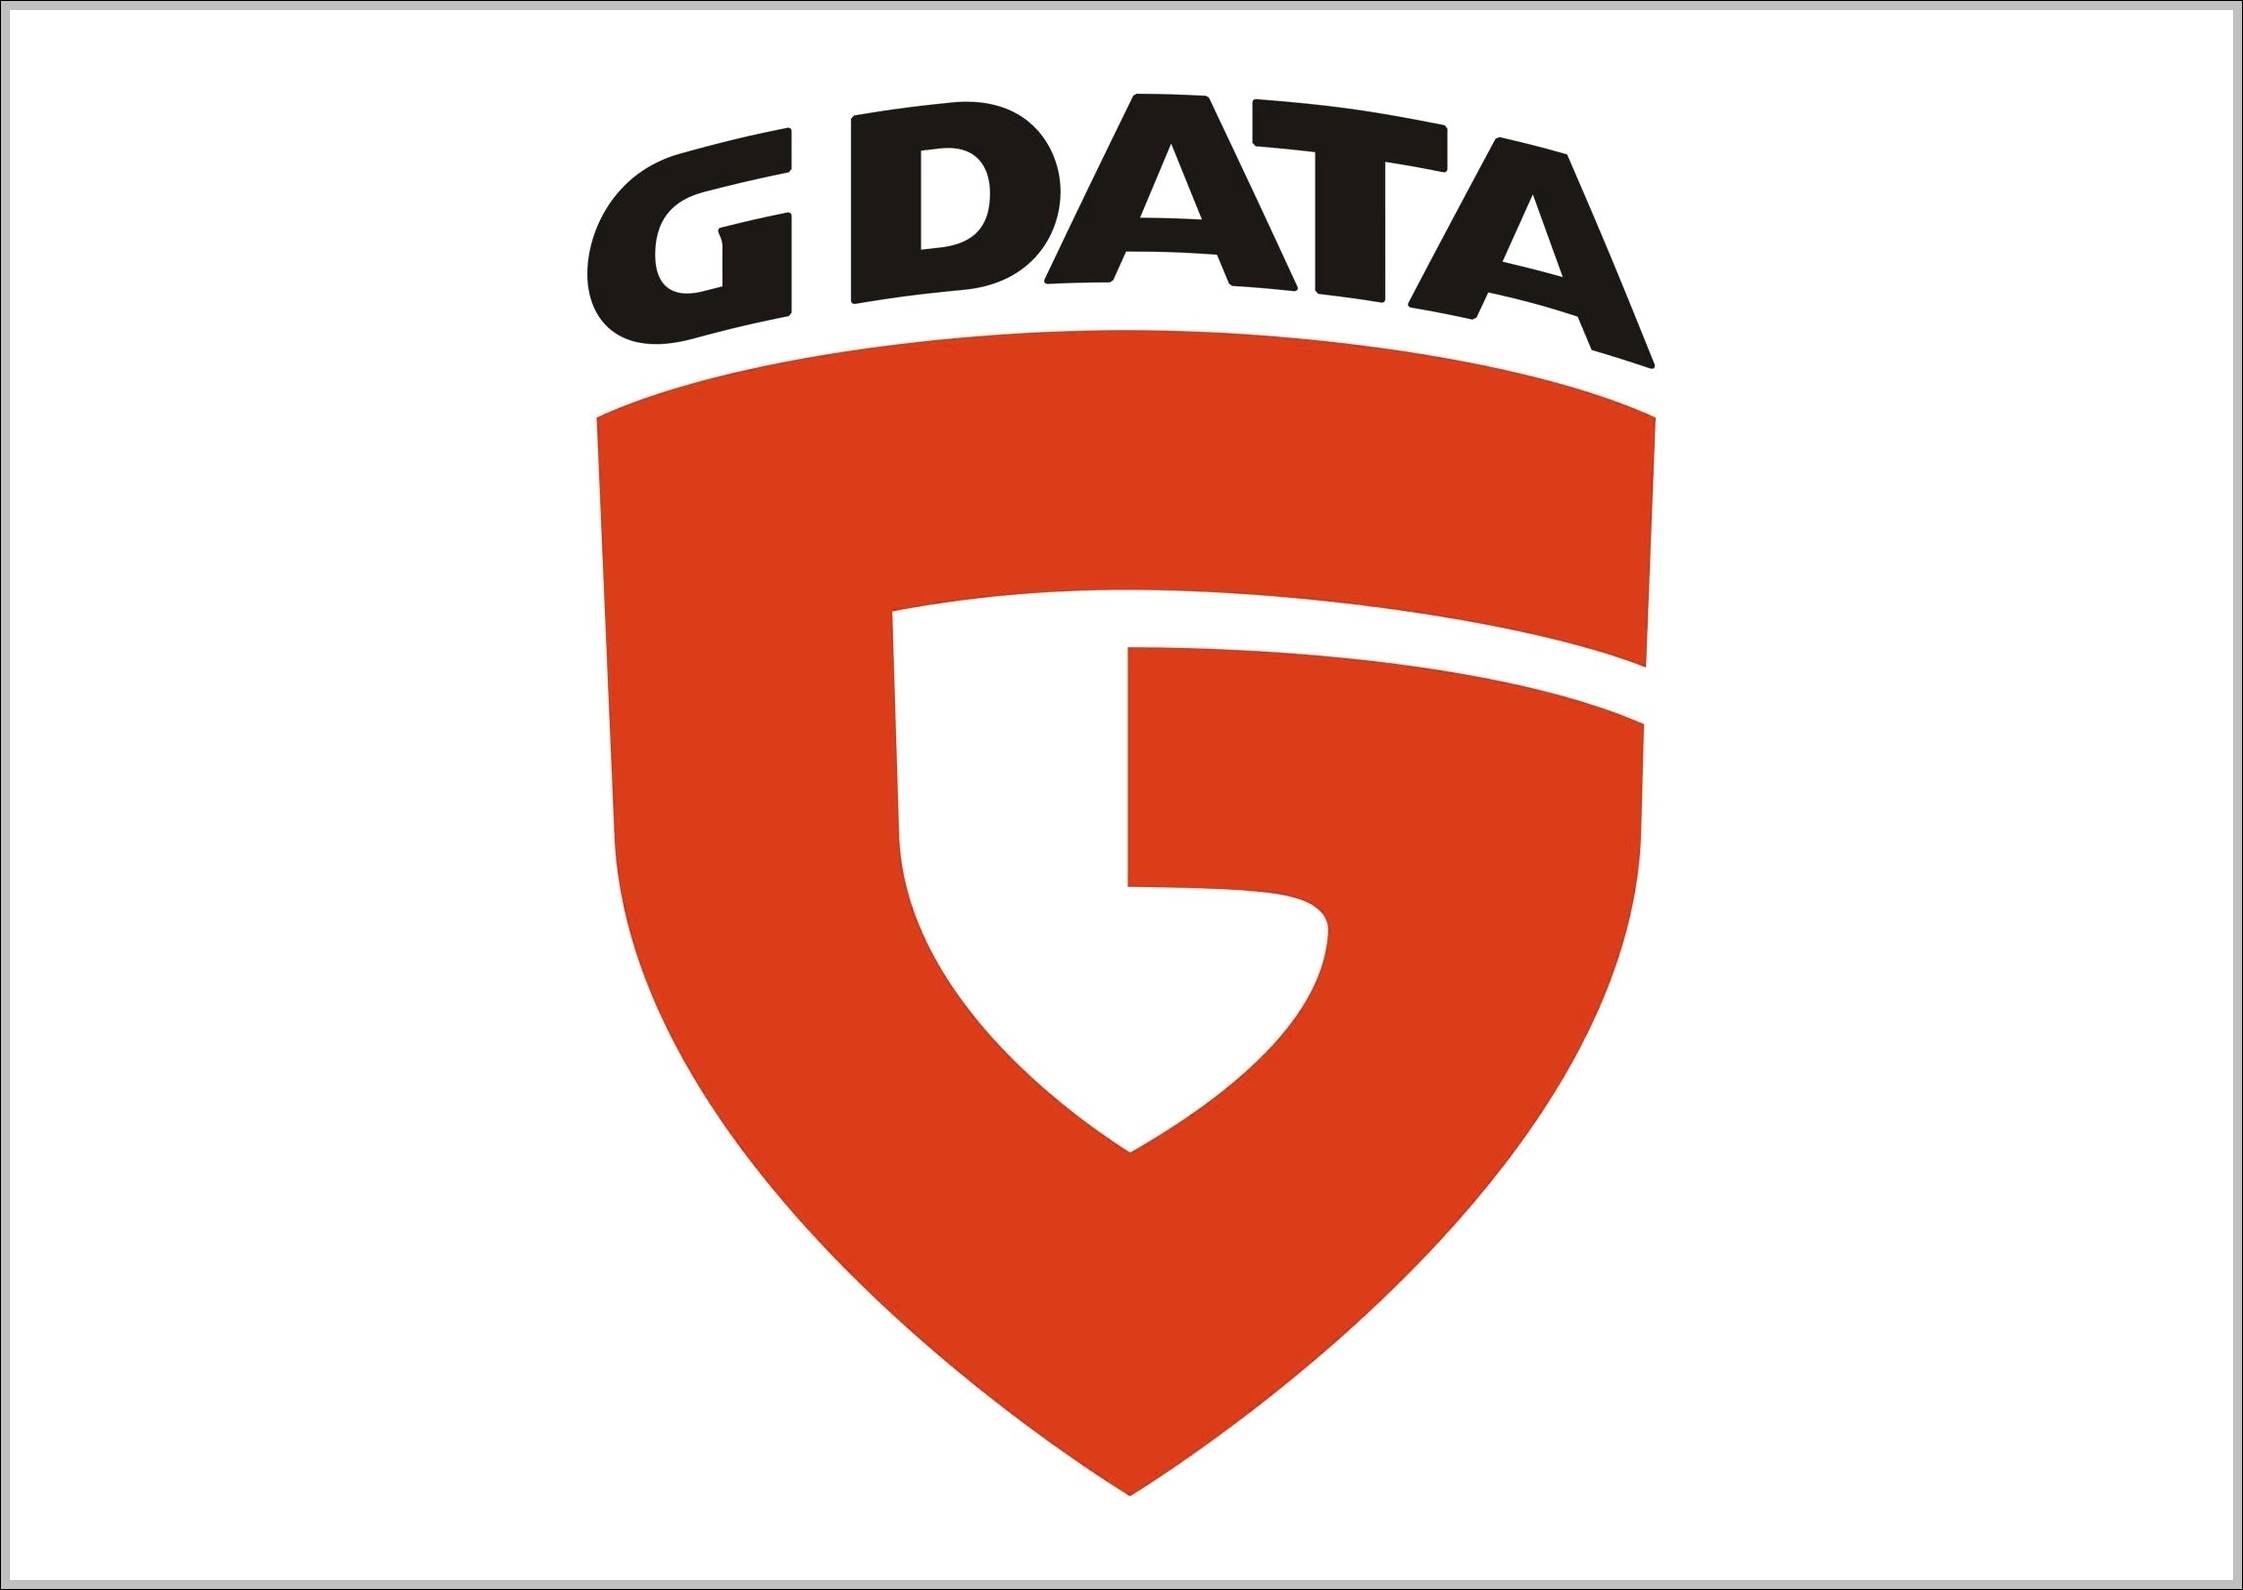 GDATA logo